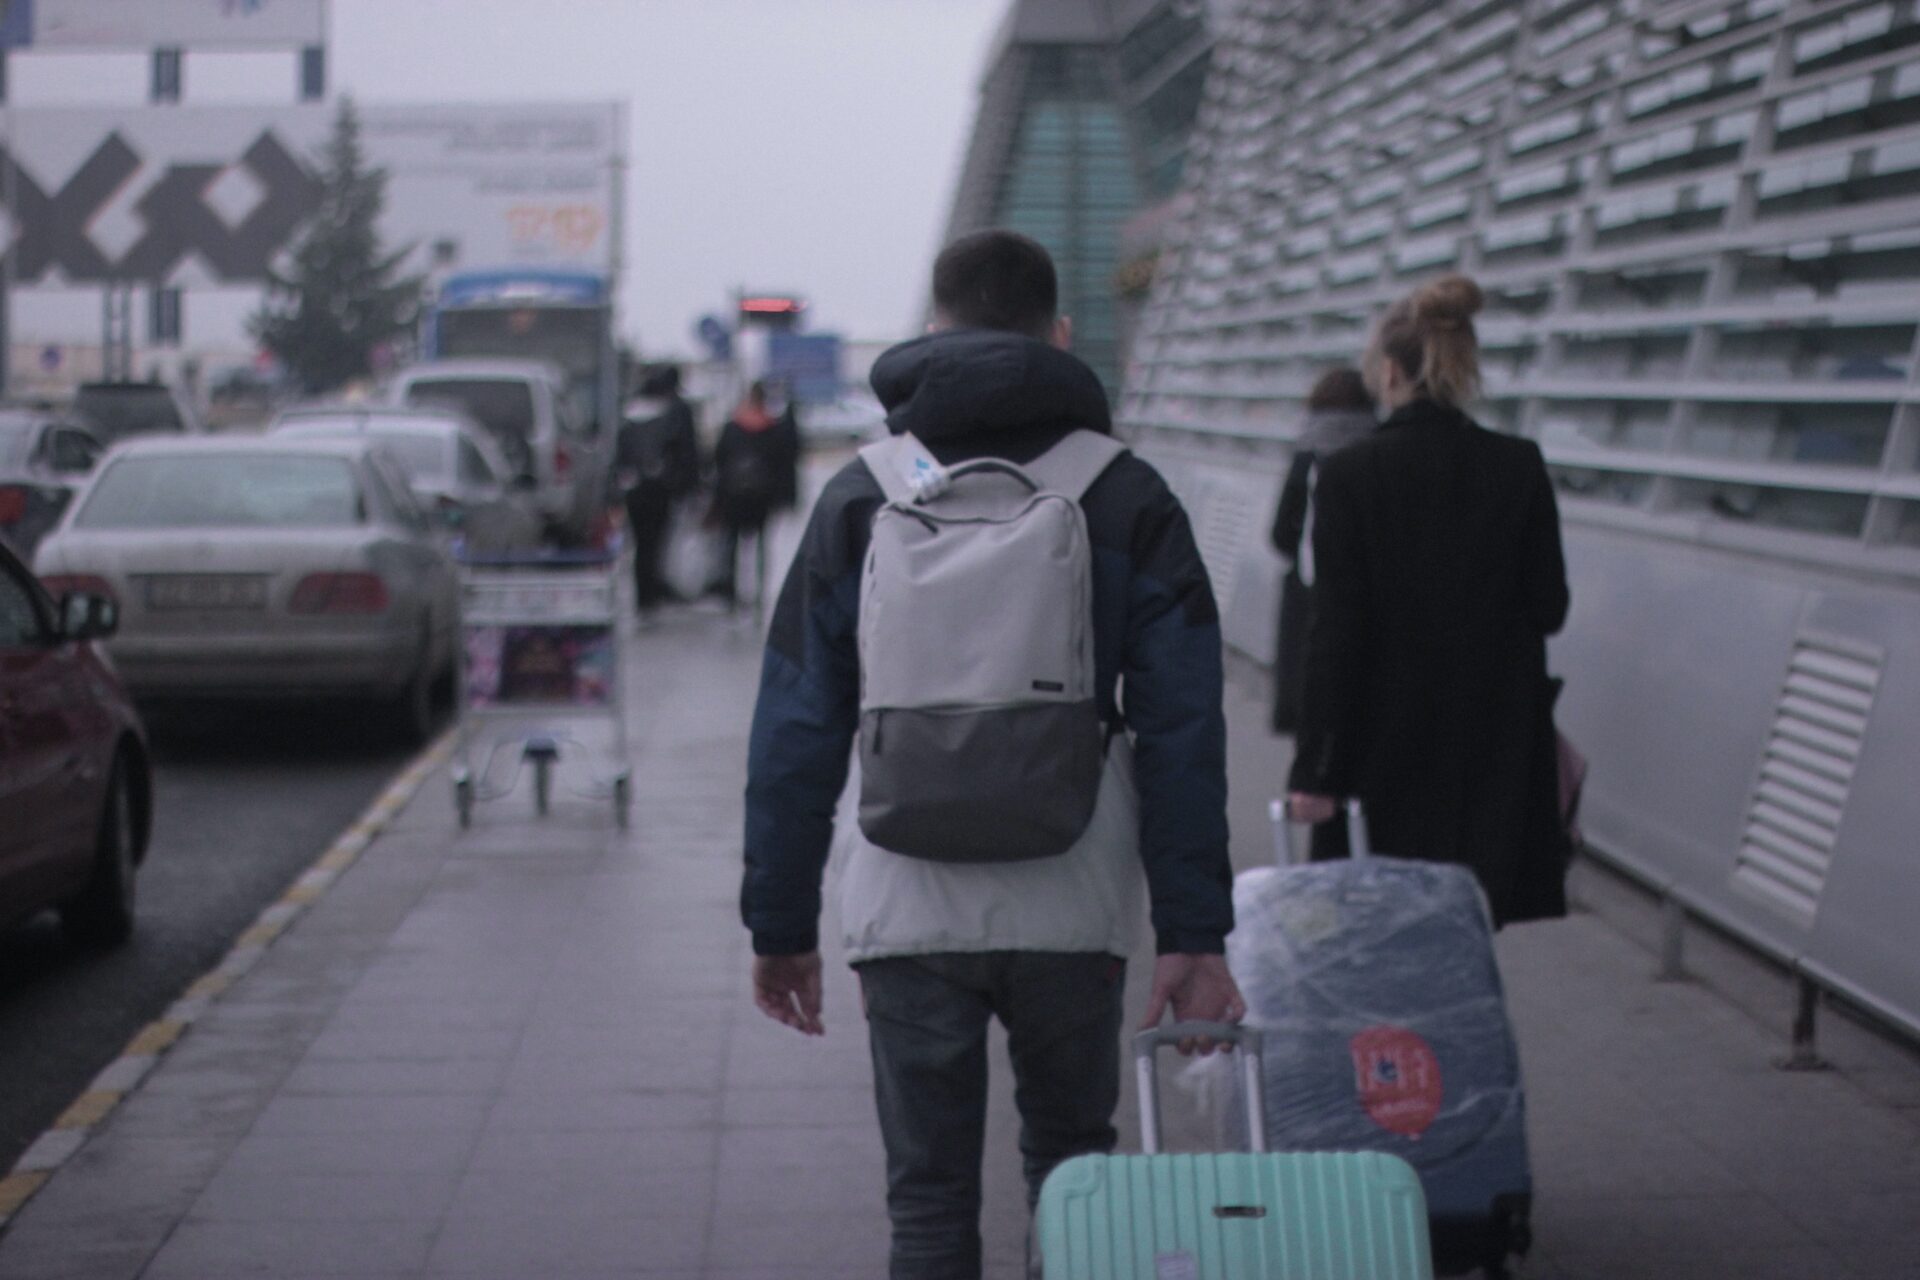 Dwie osoby, mężczyzna z plecakiem w granatowej kurtce i kobieta w czarnym płaszczu, ciągną za sobą walizki, podążając na lotnisko.